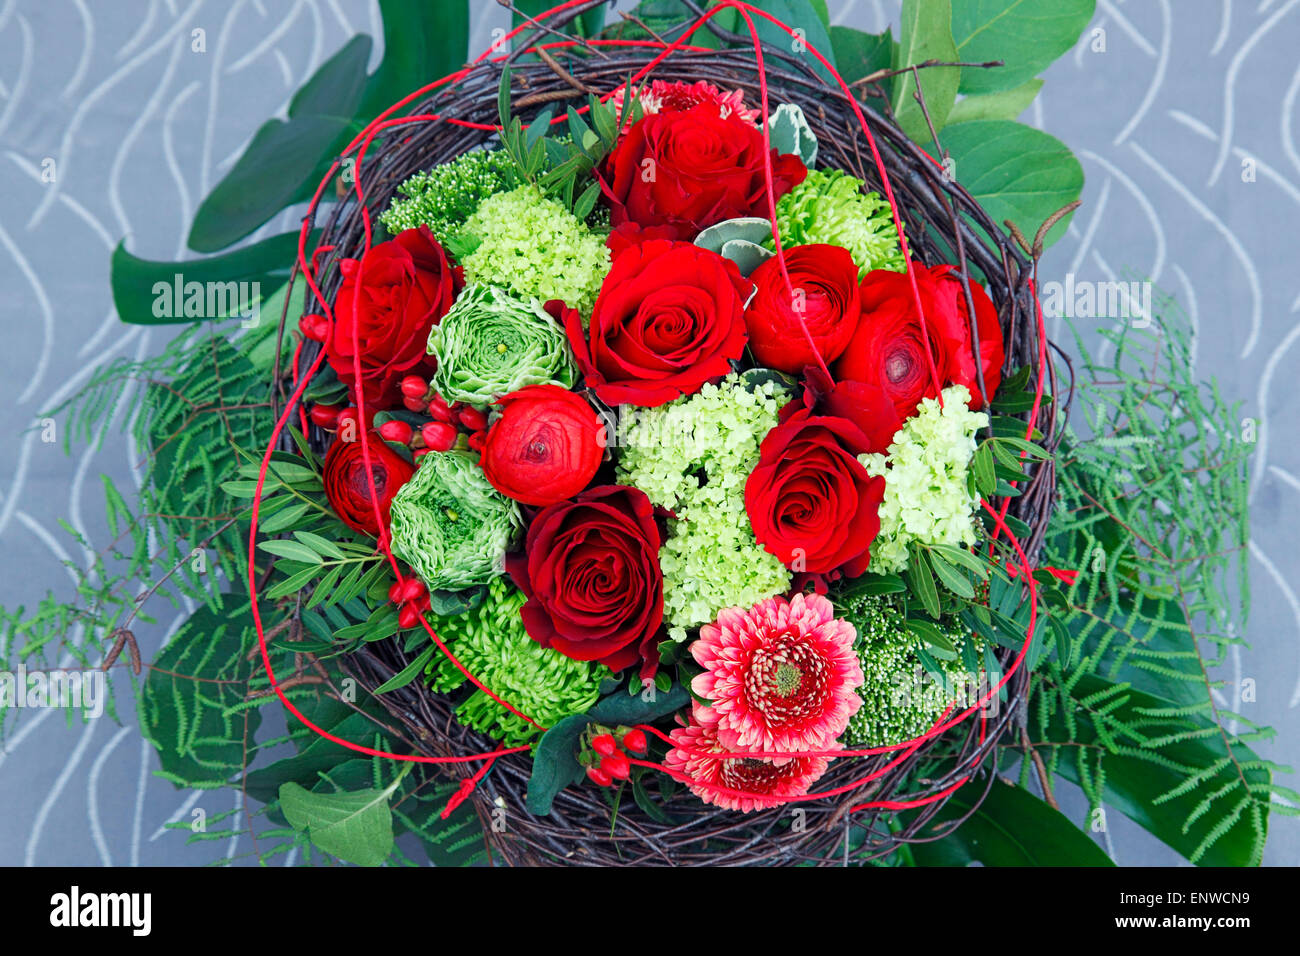 Nature, plantes, fleurs, bouquet de fleurs, anniversaire bouquet, roses rouges, renoncules, Ranunculus, gerbera Banque D'Images